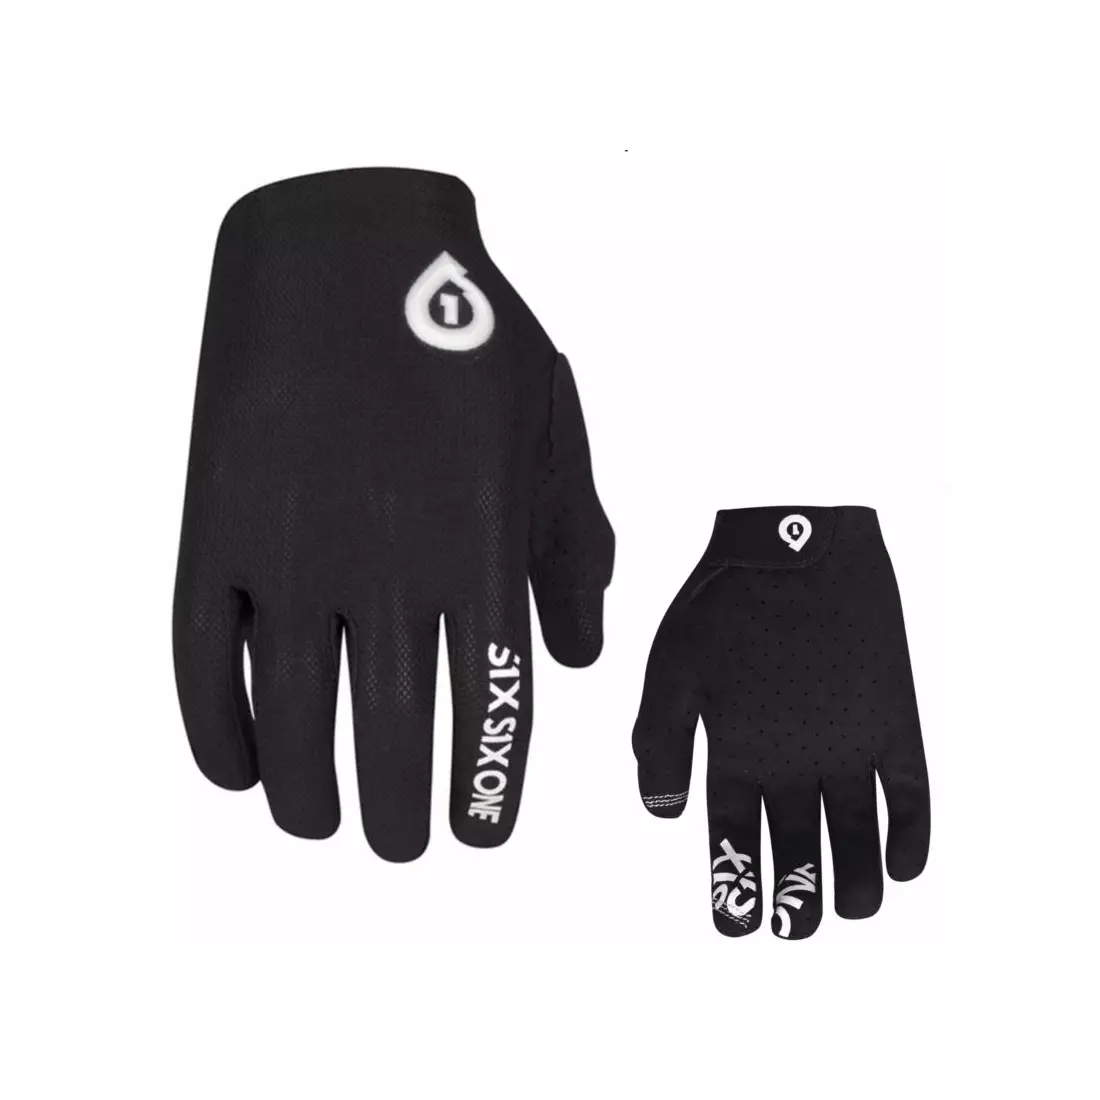 661 cycling gloves RAJI CLASSIC black 10001572